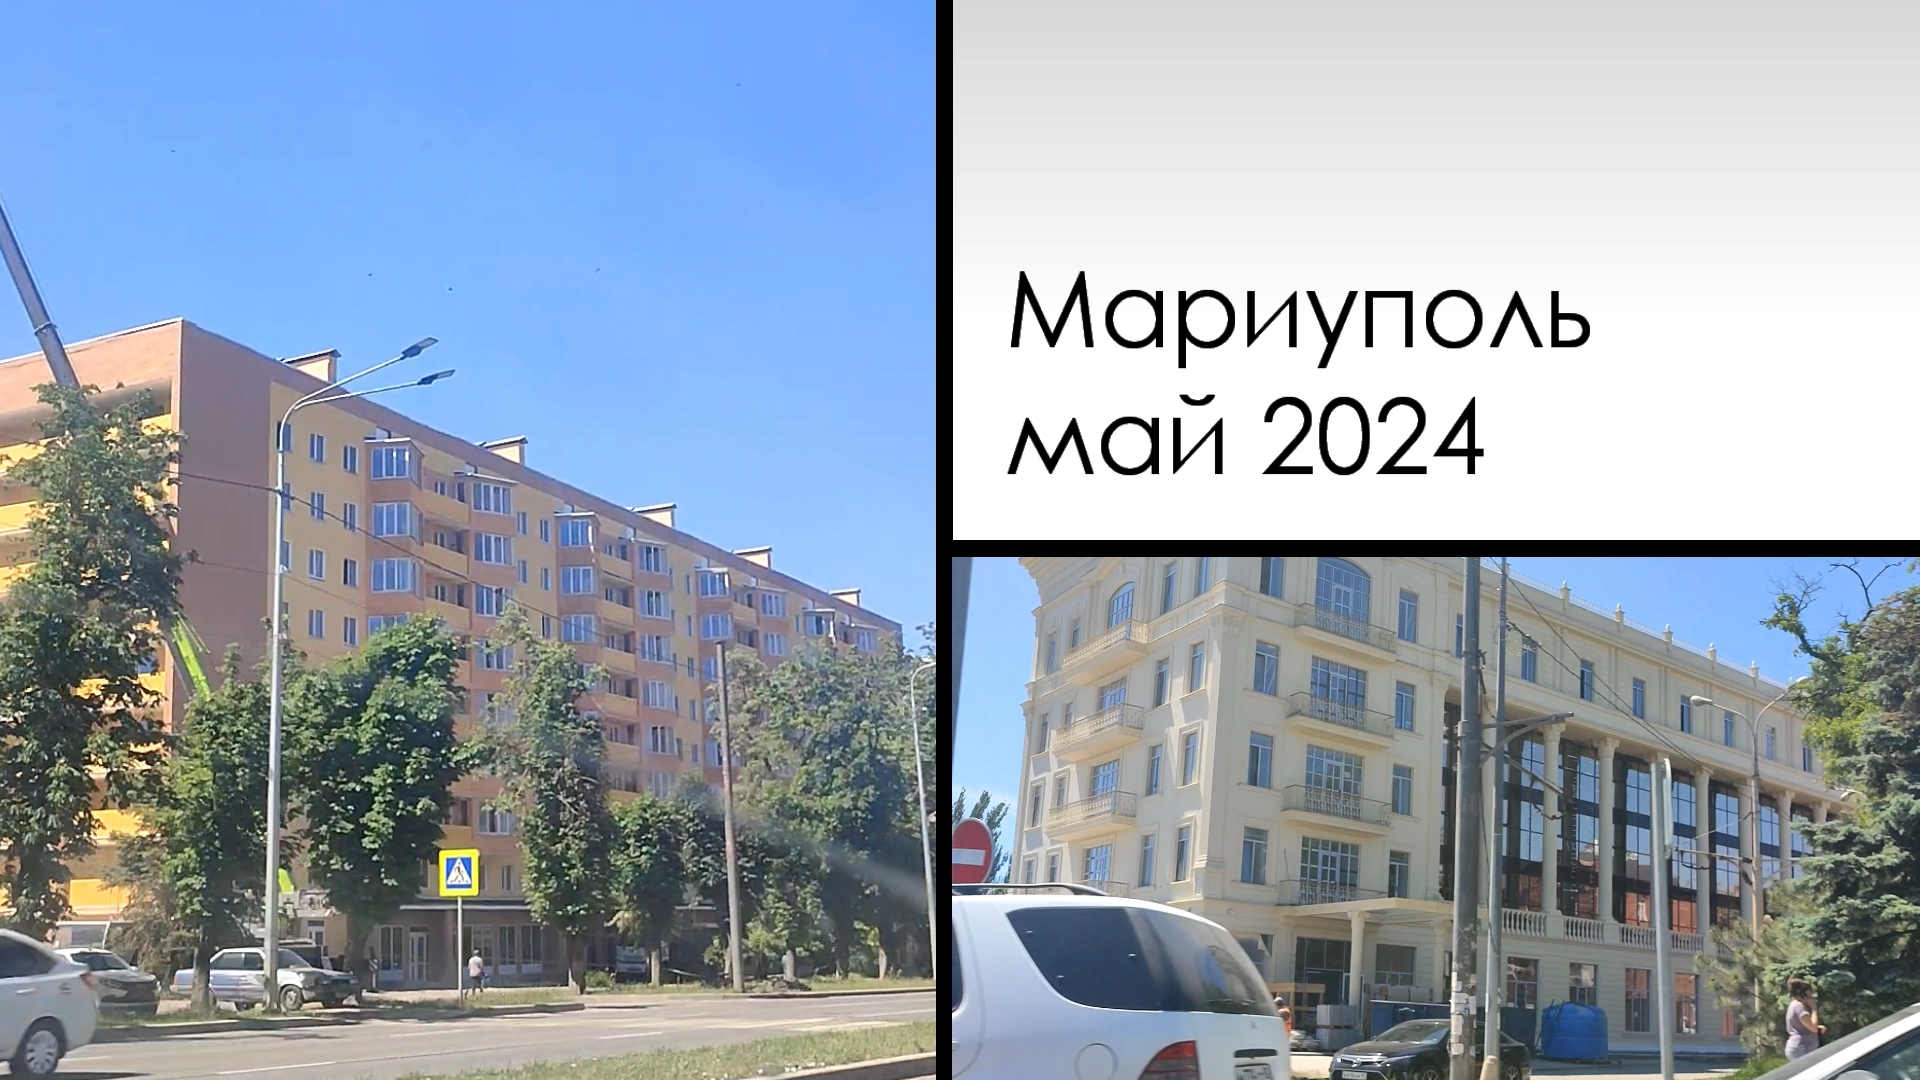 Небольшая прогулка по пр.Ленина (Мира) Mariupol. May 2024